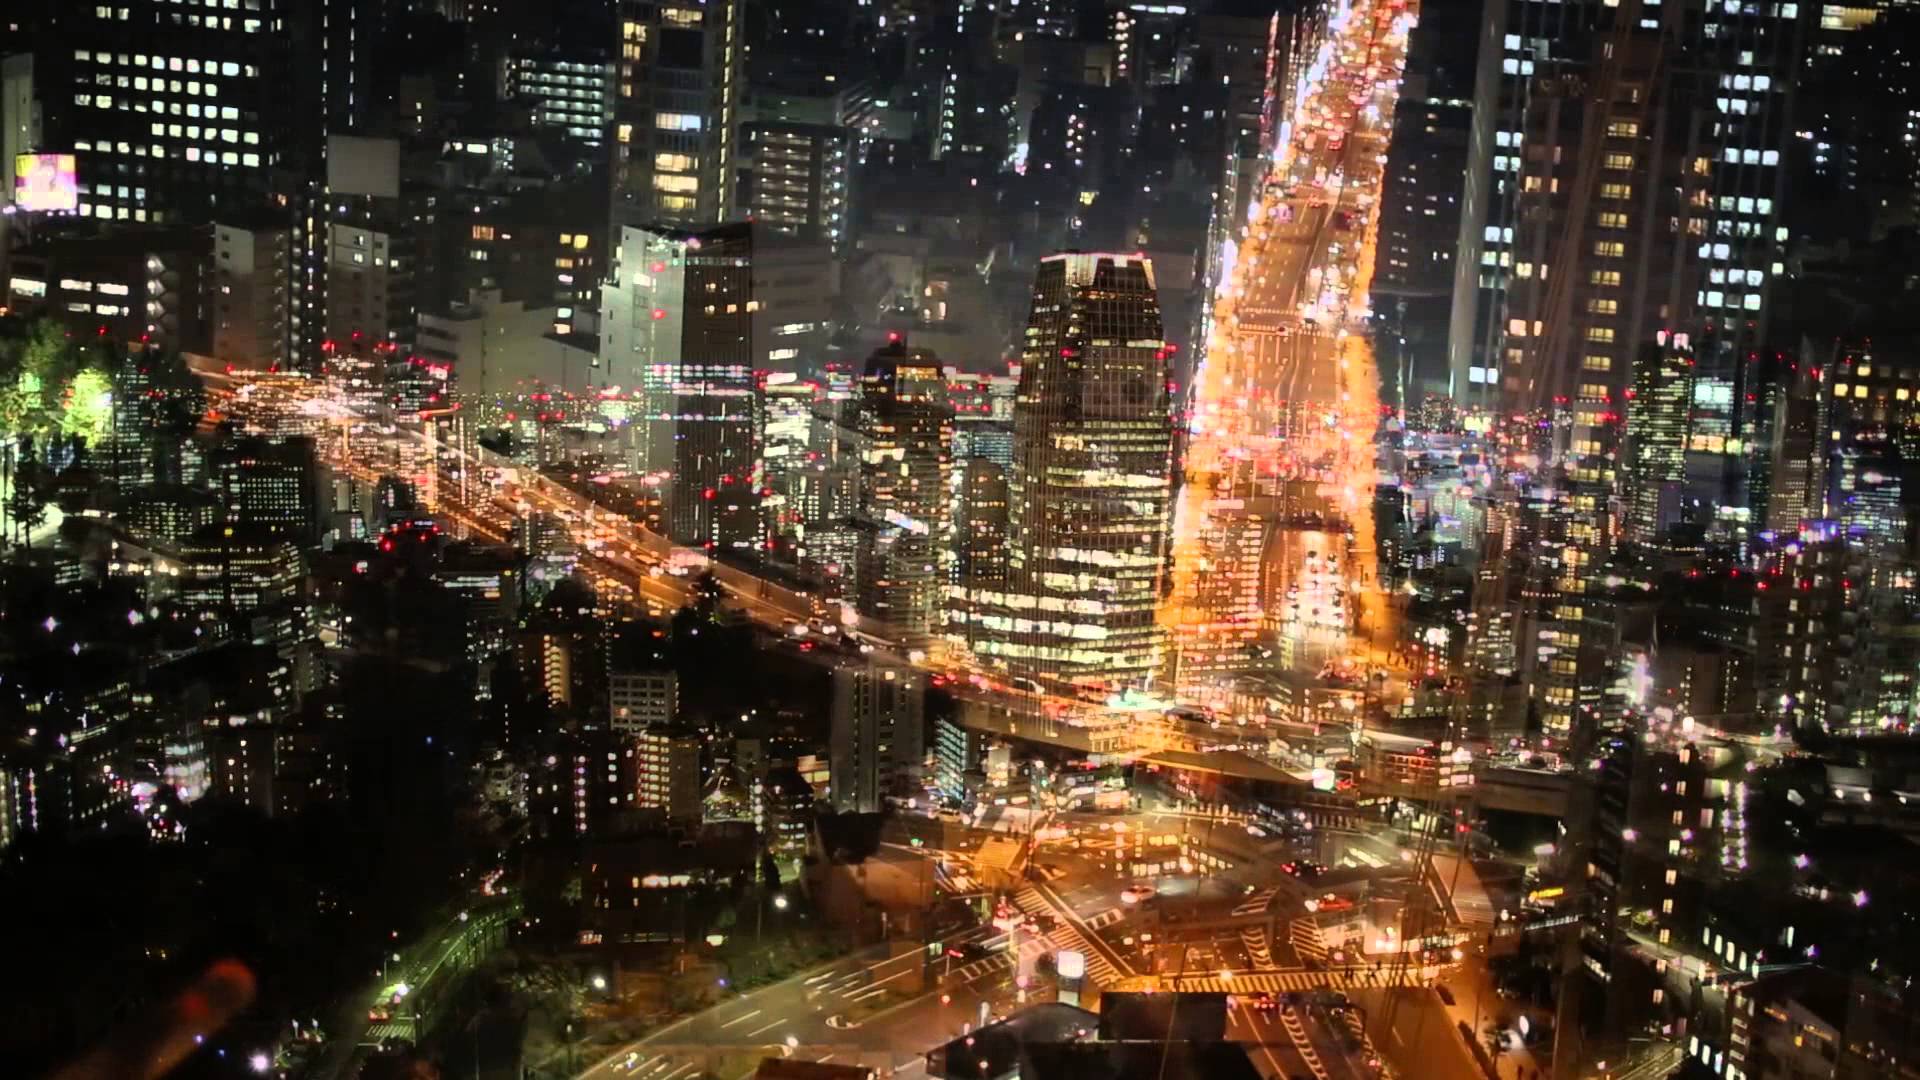 Tokyo Night View - YouTube